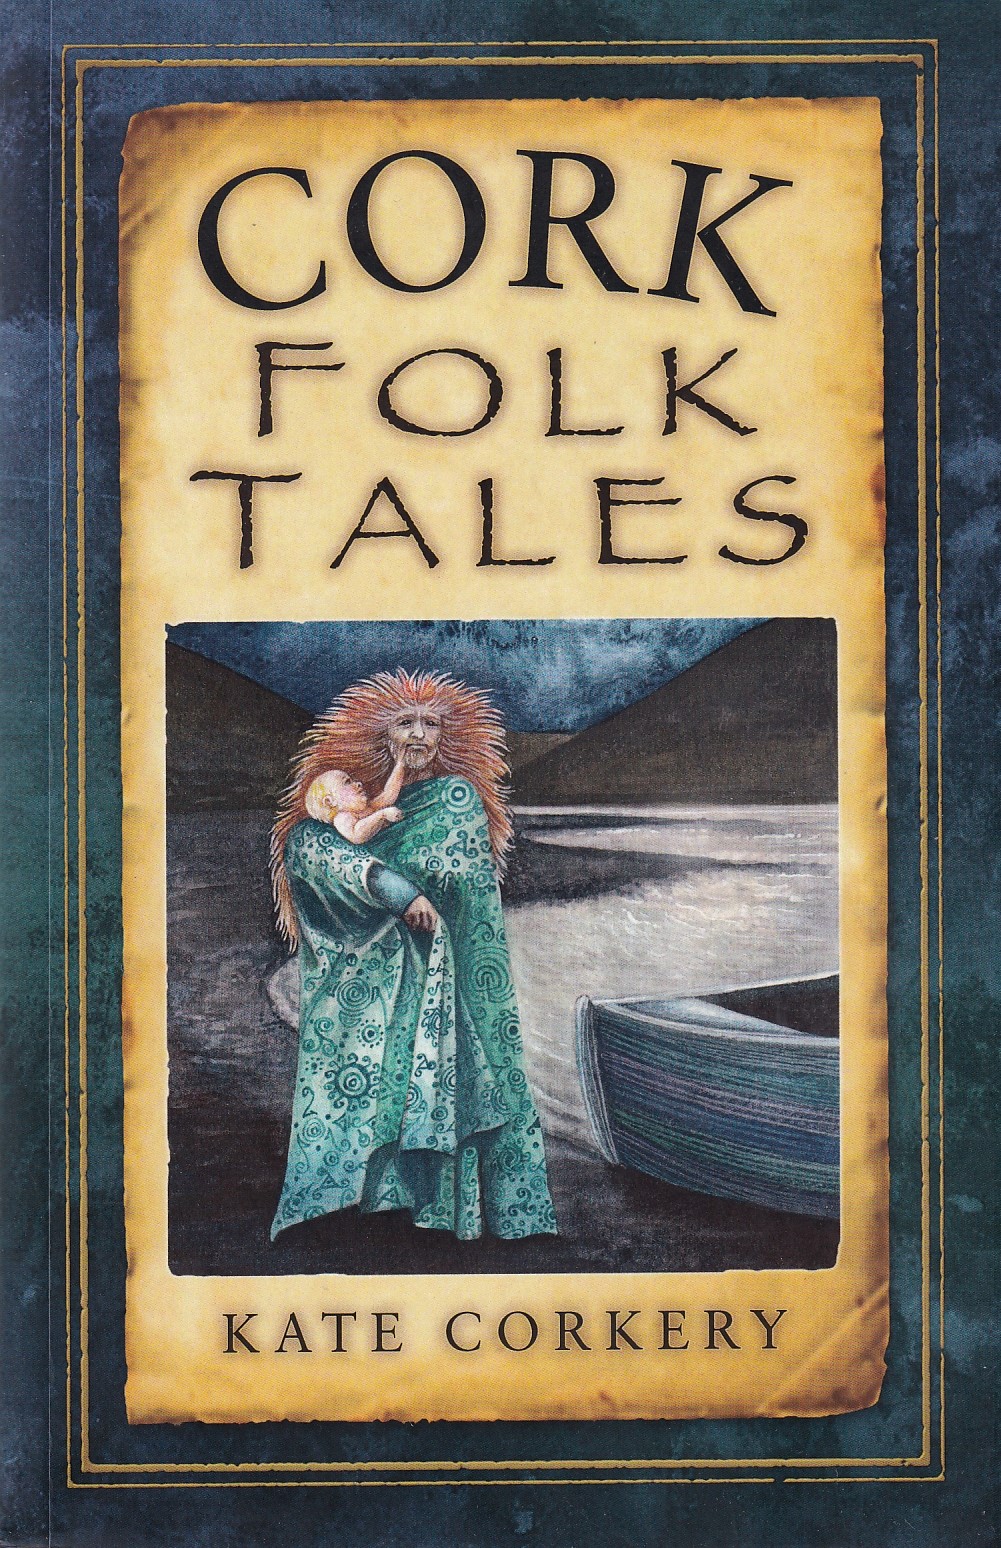 Cork Folk Tales by Kate Corkery